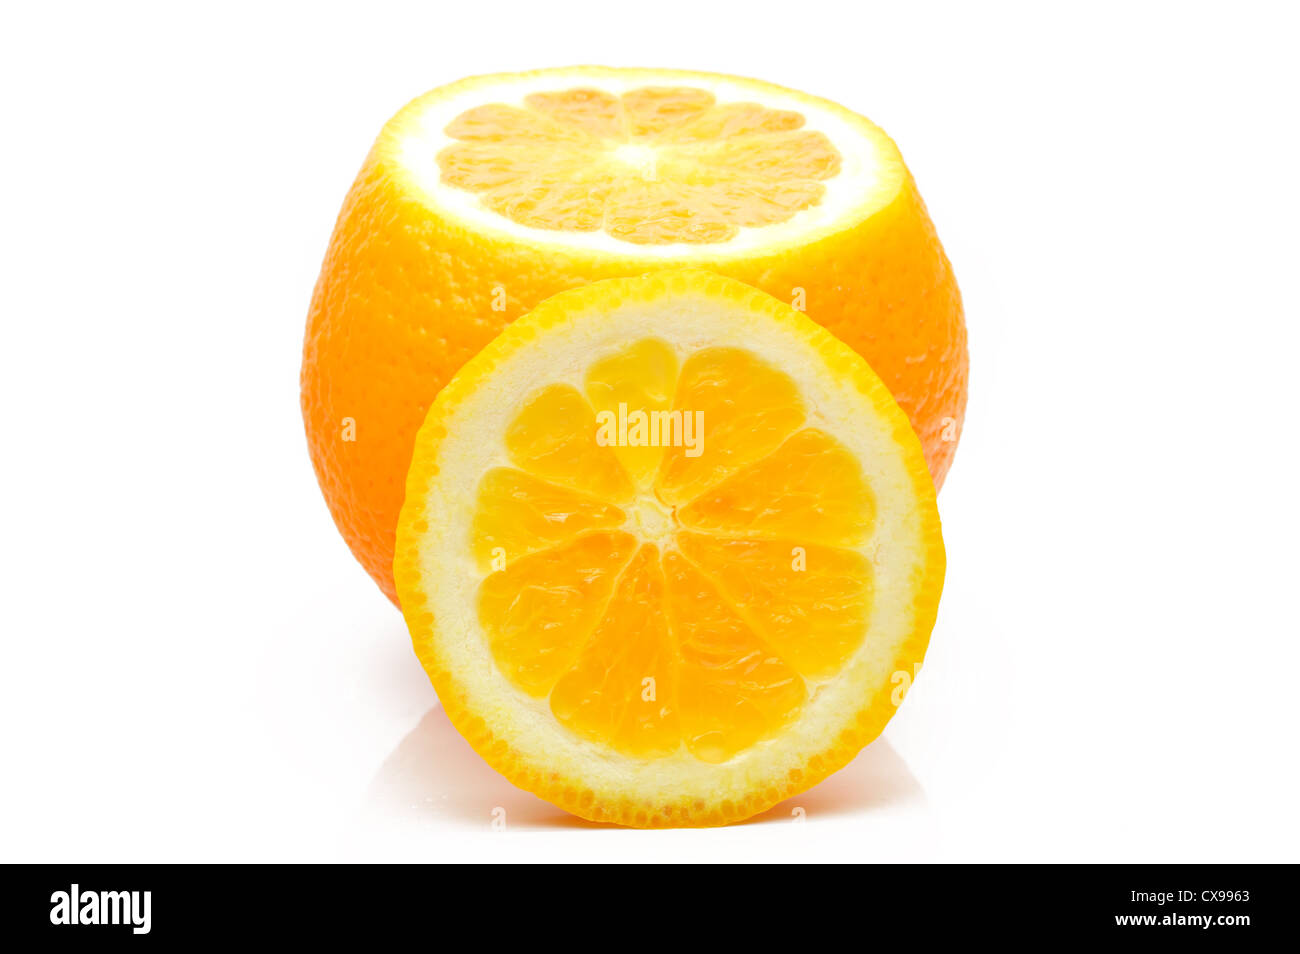 Orange juteuse sur un fond blanc, close-up Banque D'Images